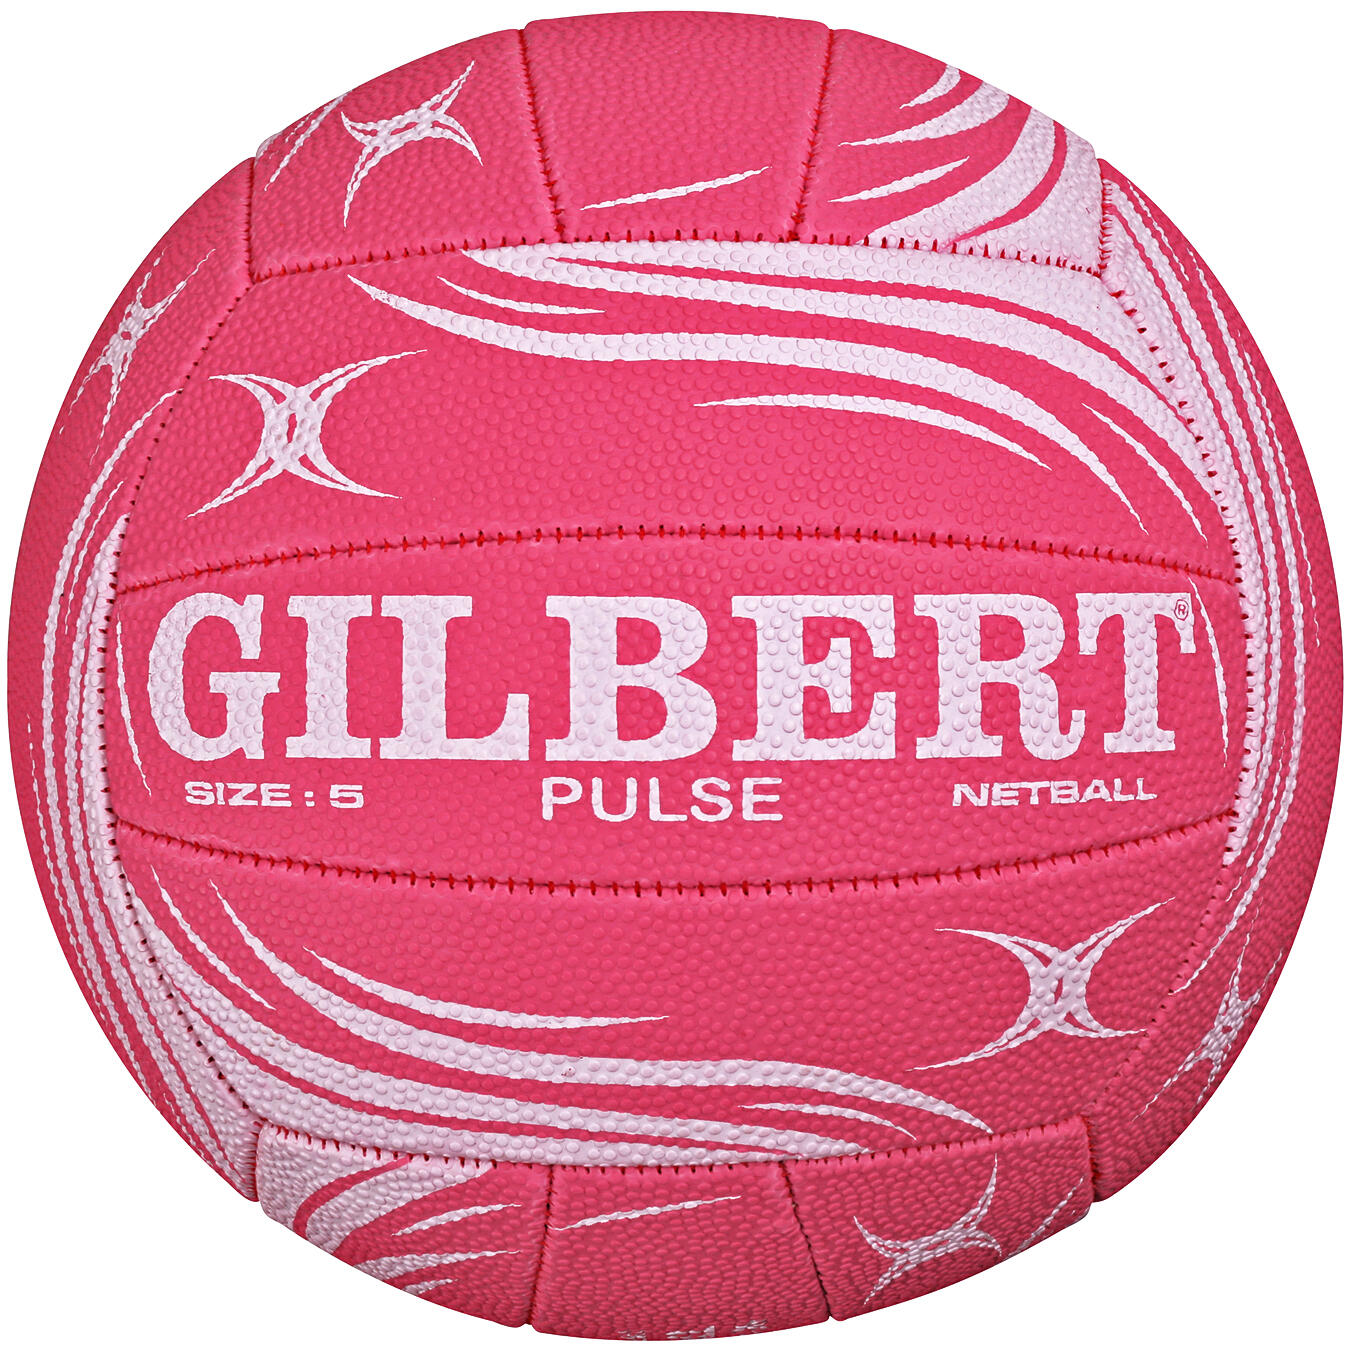 GILBERT Pulse Match Ball, White